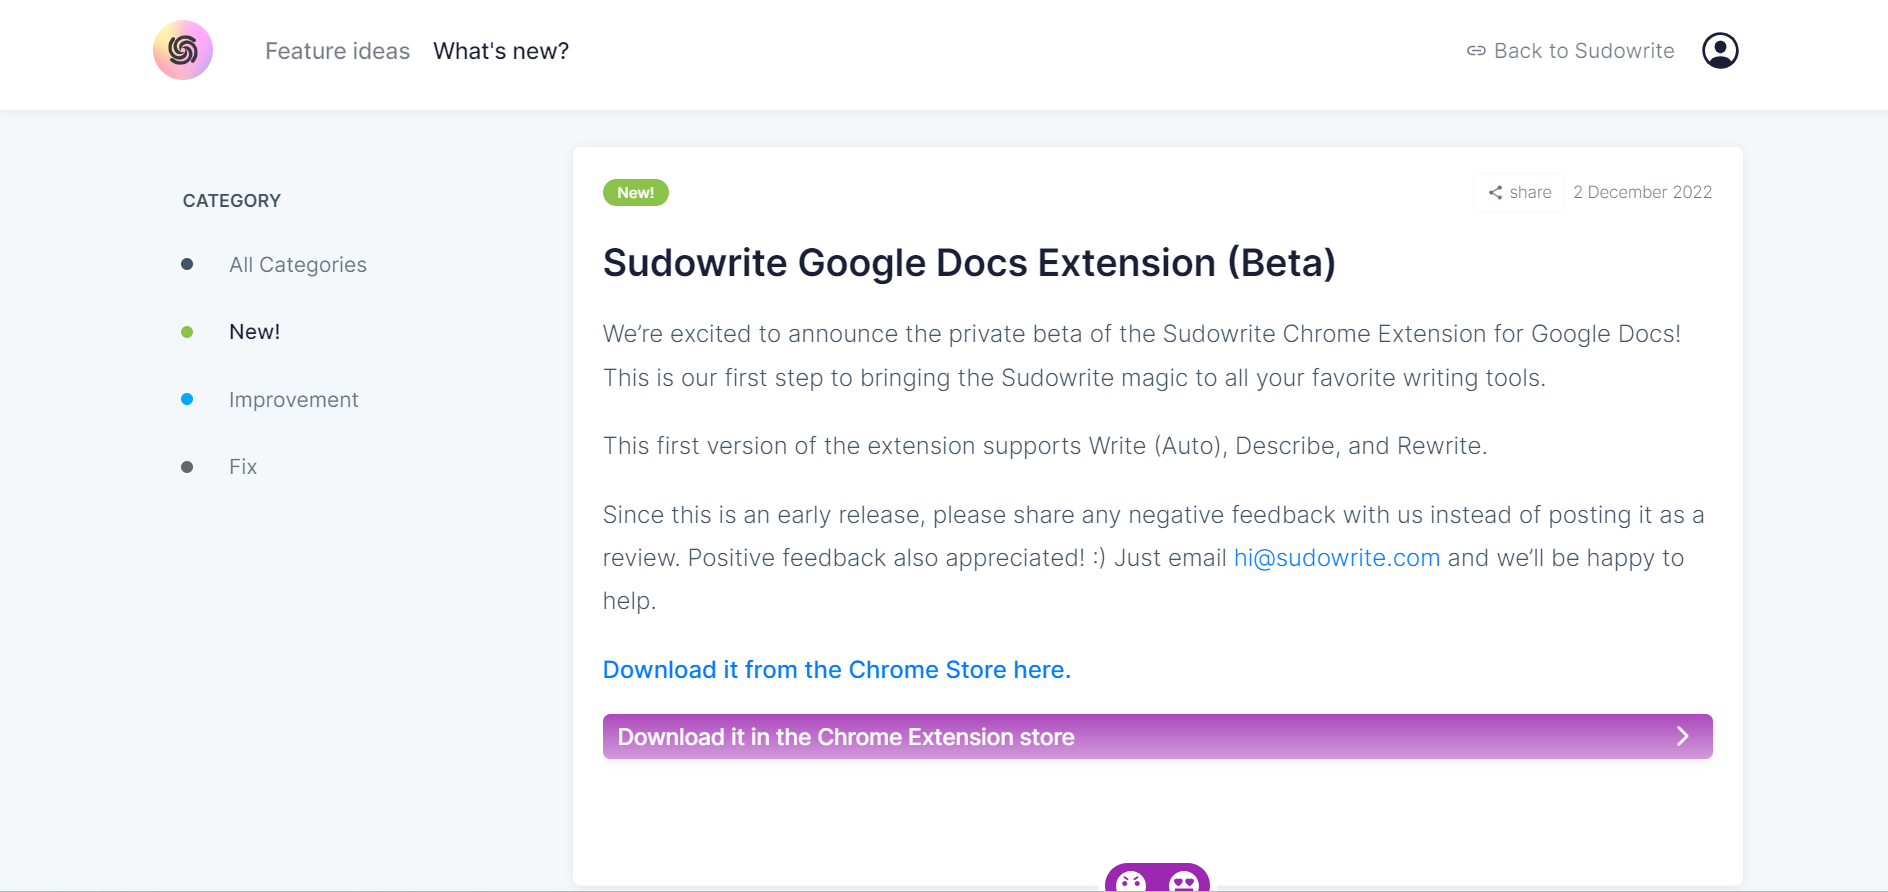 Sudowrite Google Docs Extension Announcement